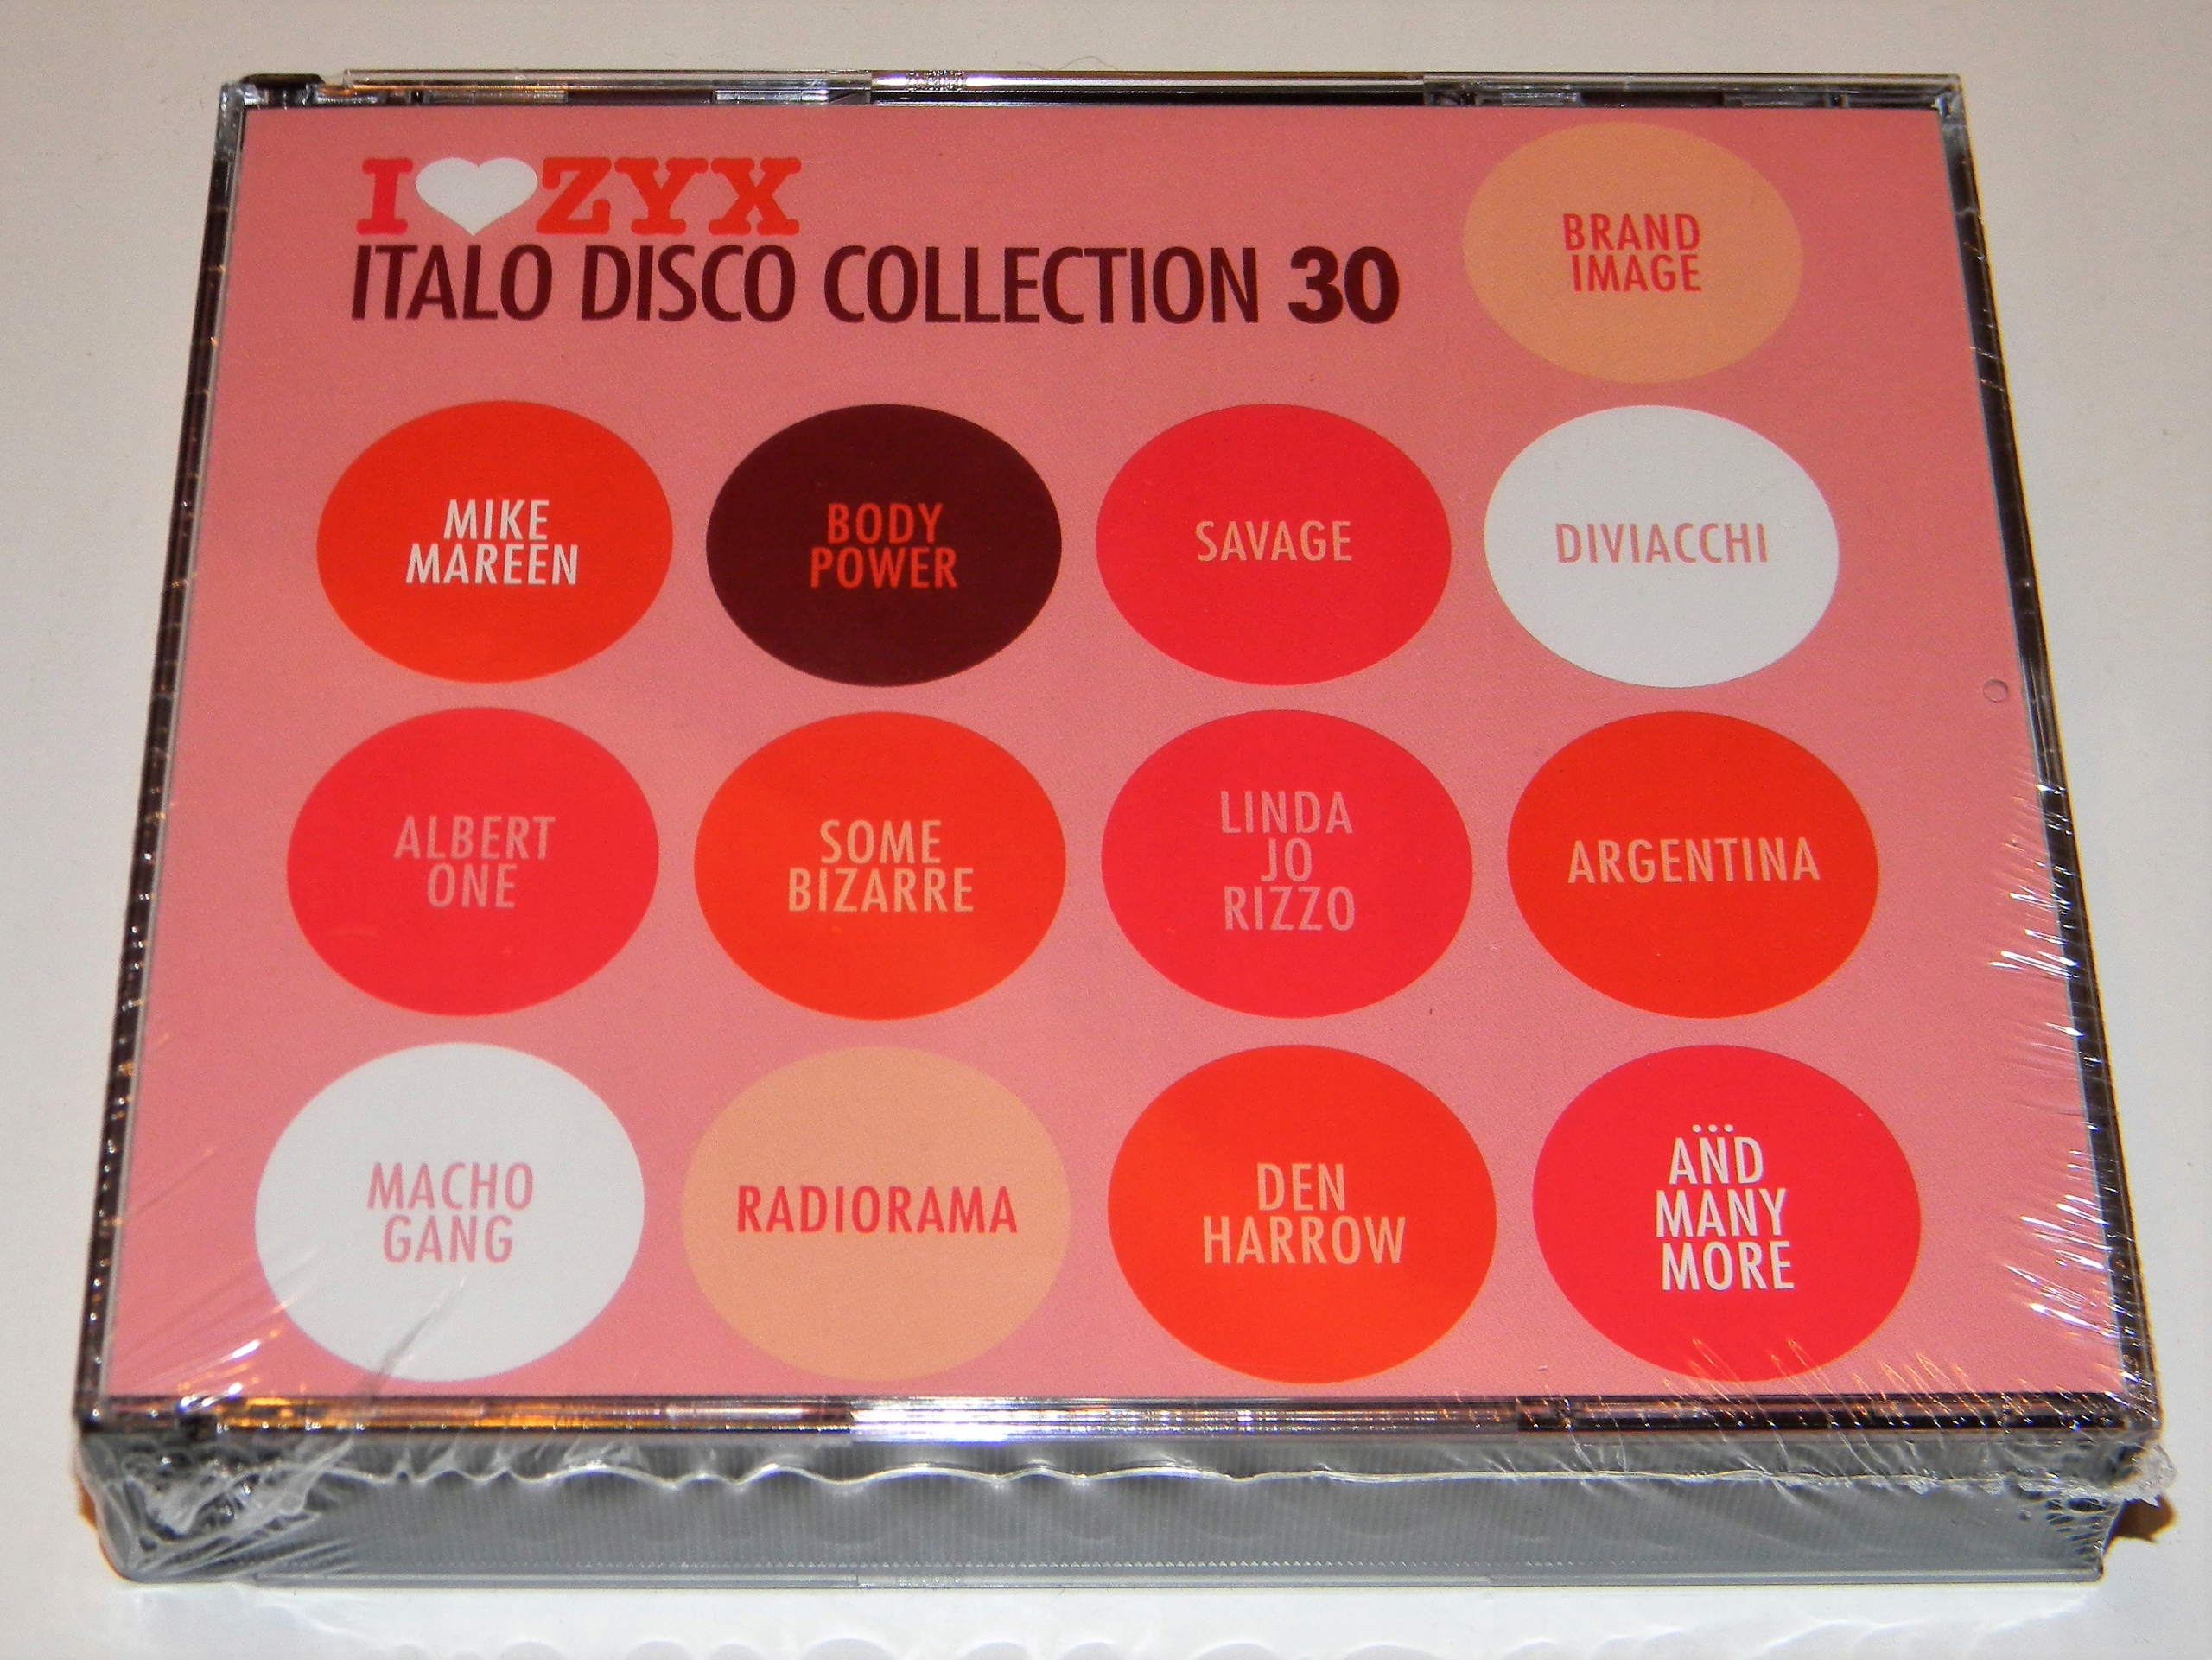 Zyx italo disco new generation 24. ZYX Disco collection. I Love ZYX Italo Disco. Italo Disco collection фото. I Love ZYX Italo Disco collection Vol.32.